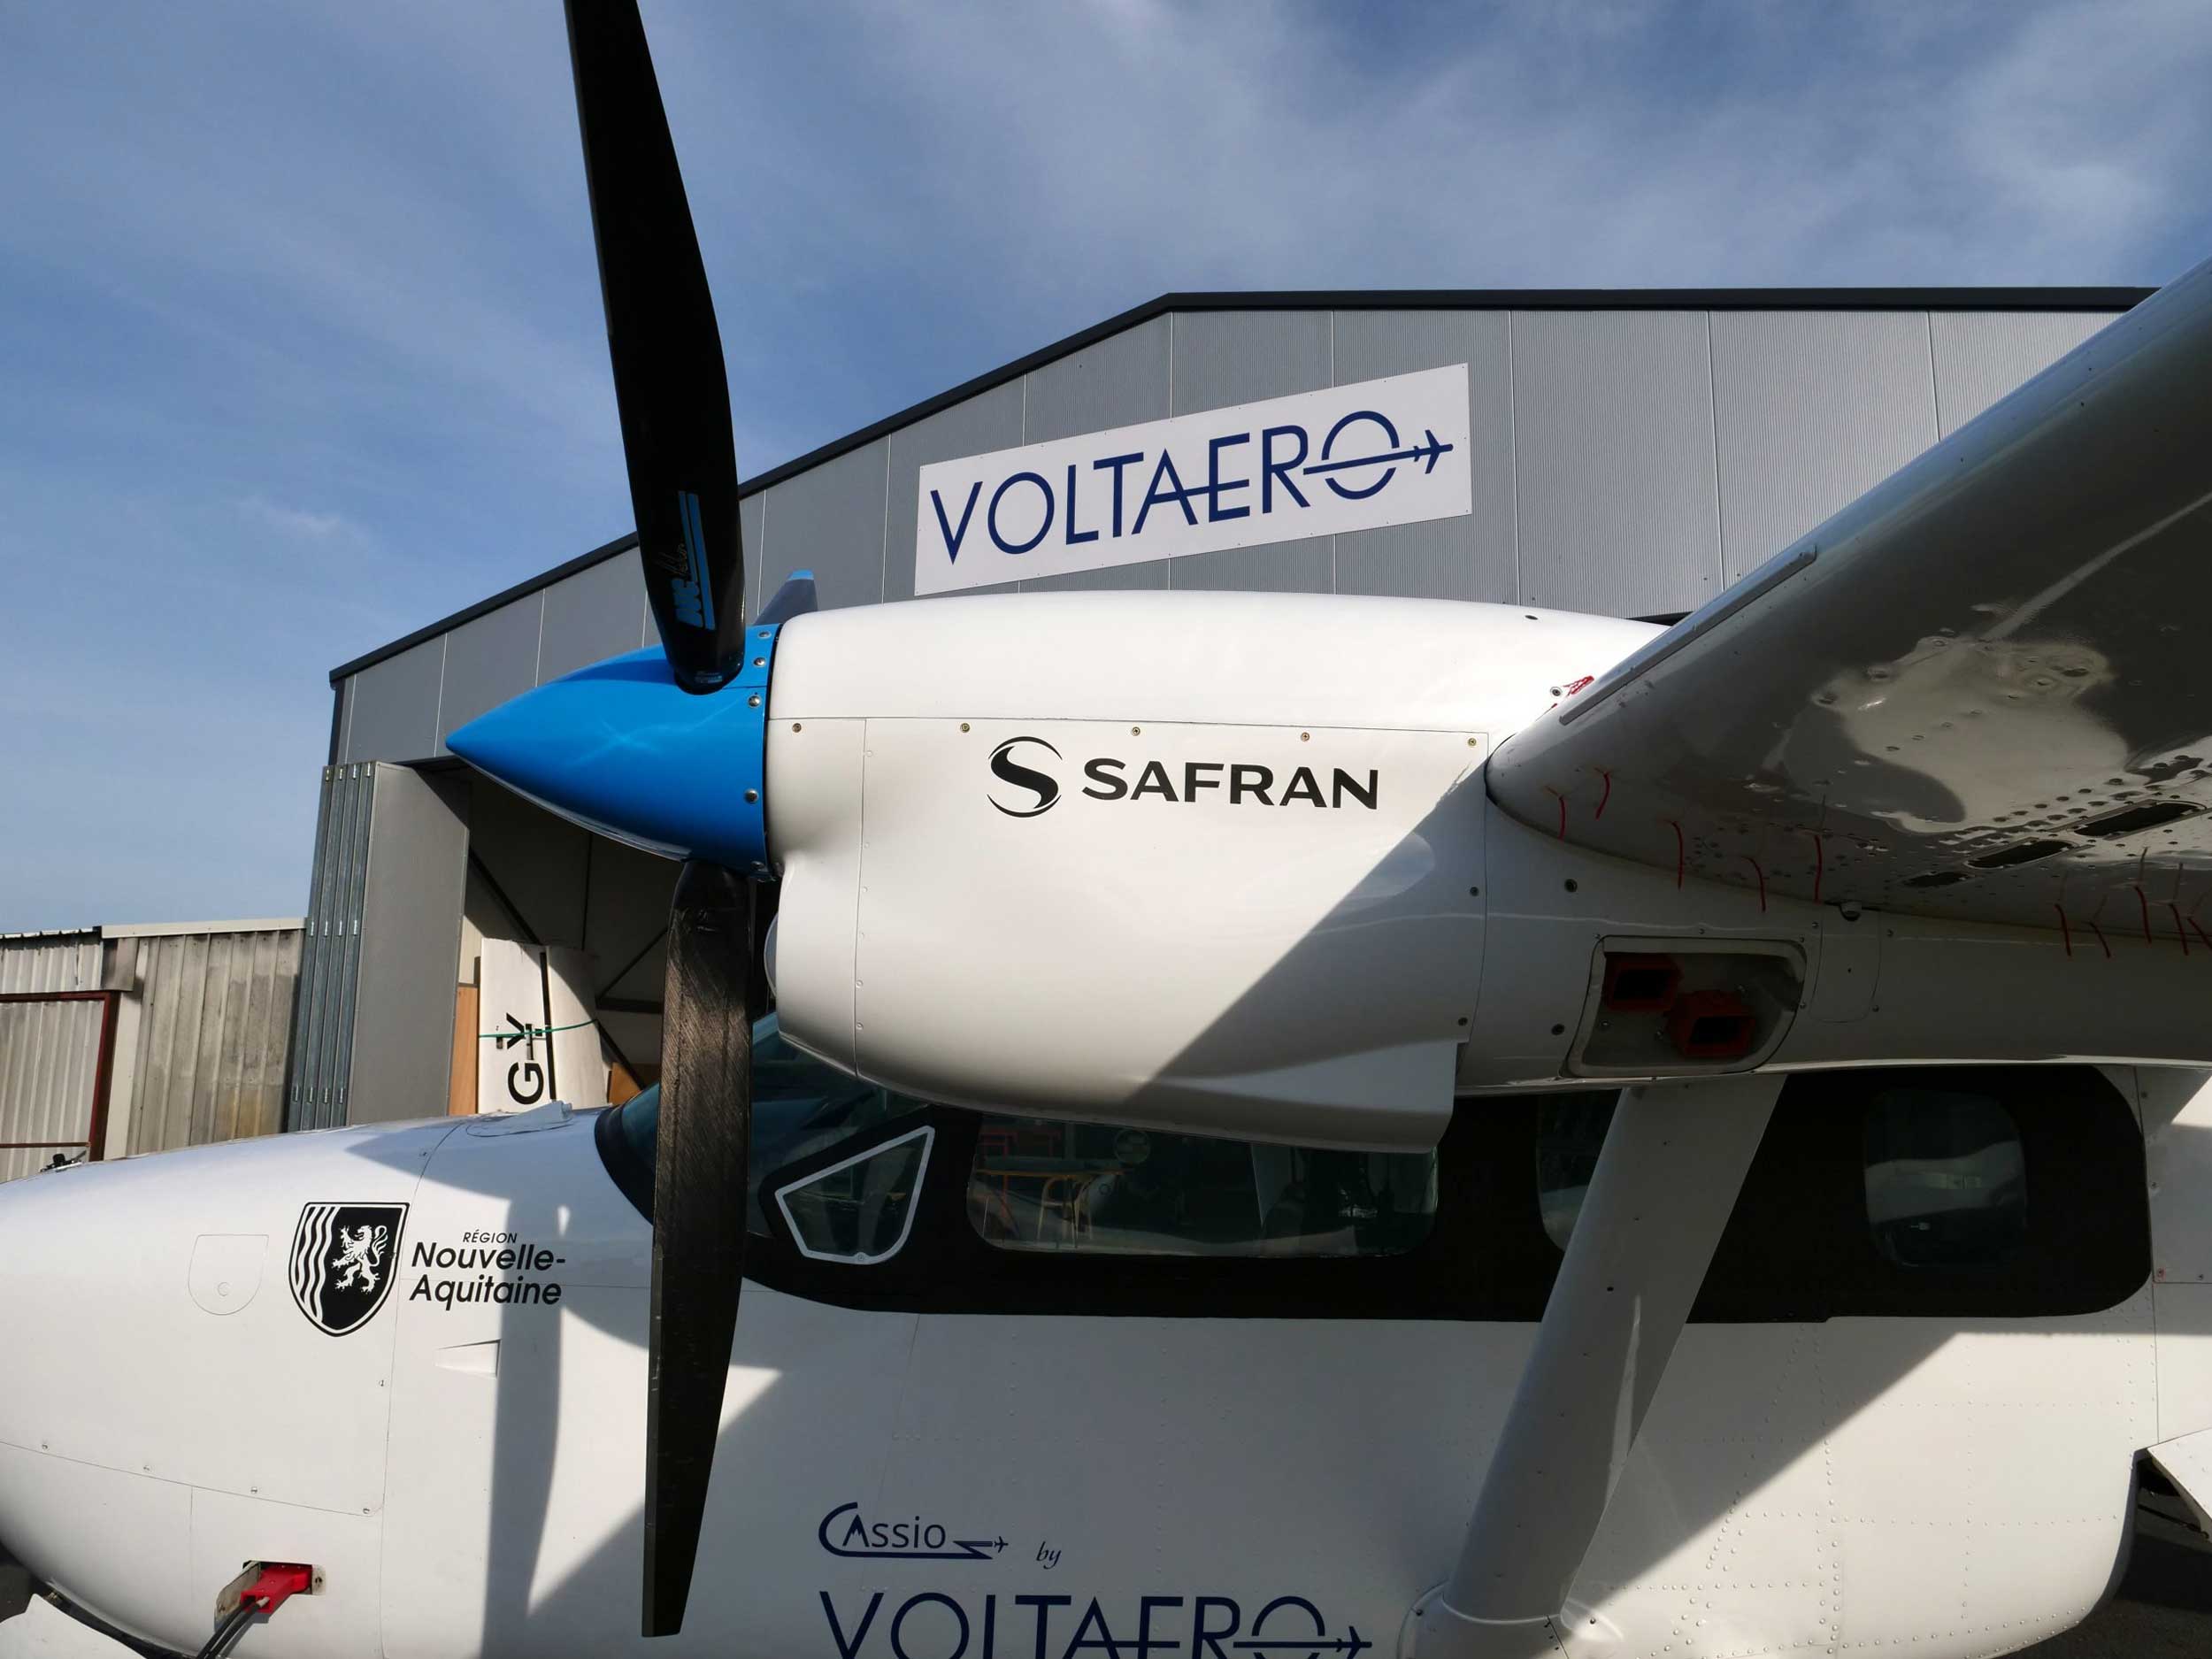 VoltAero Safran electric motors